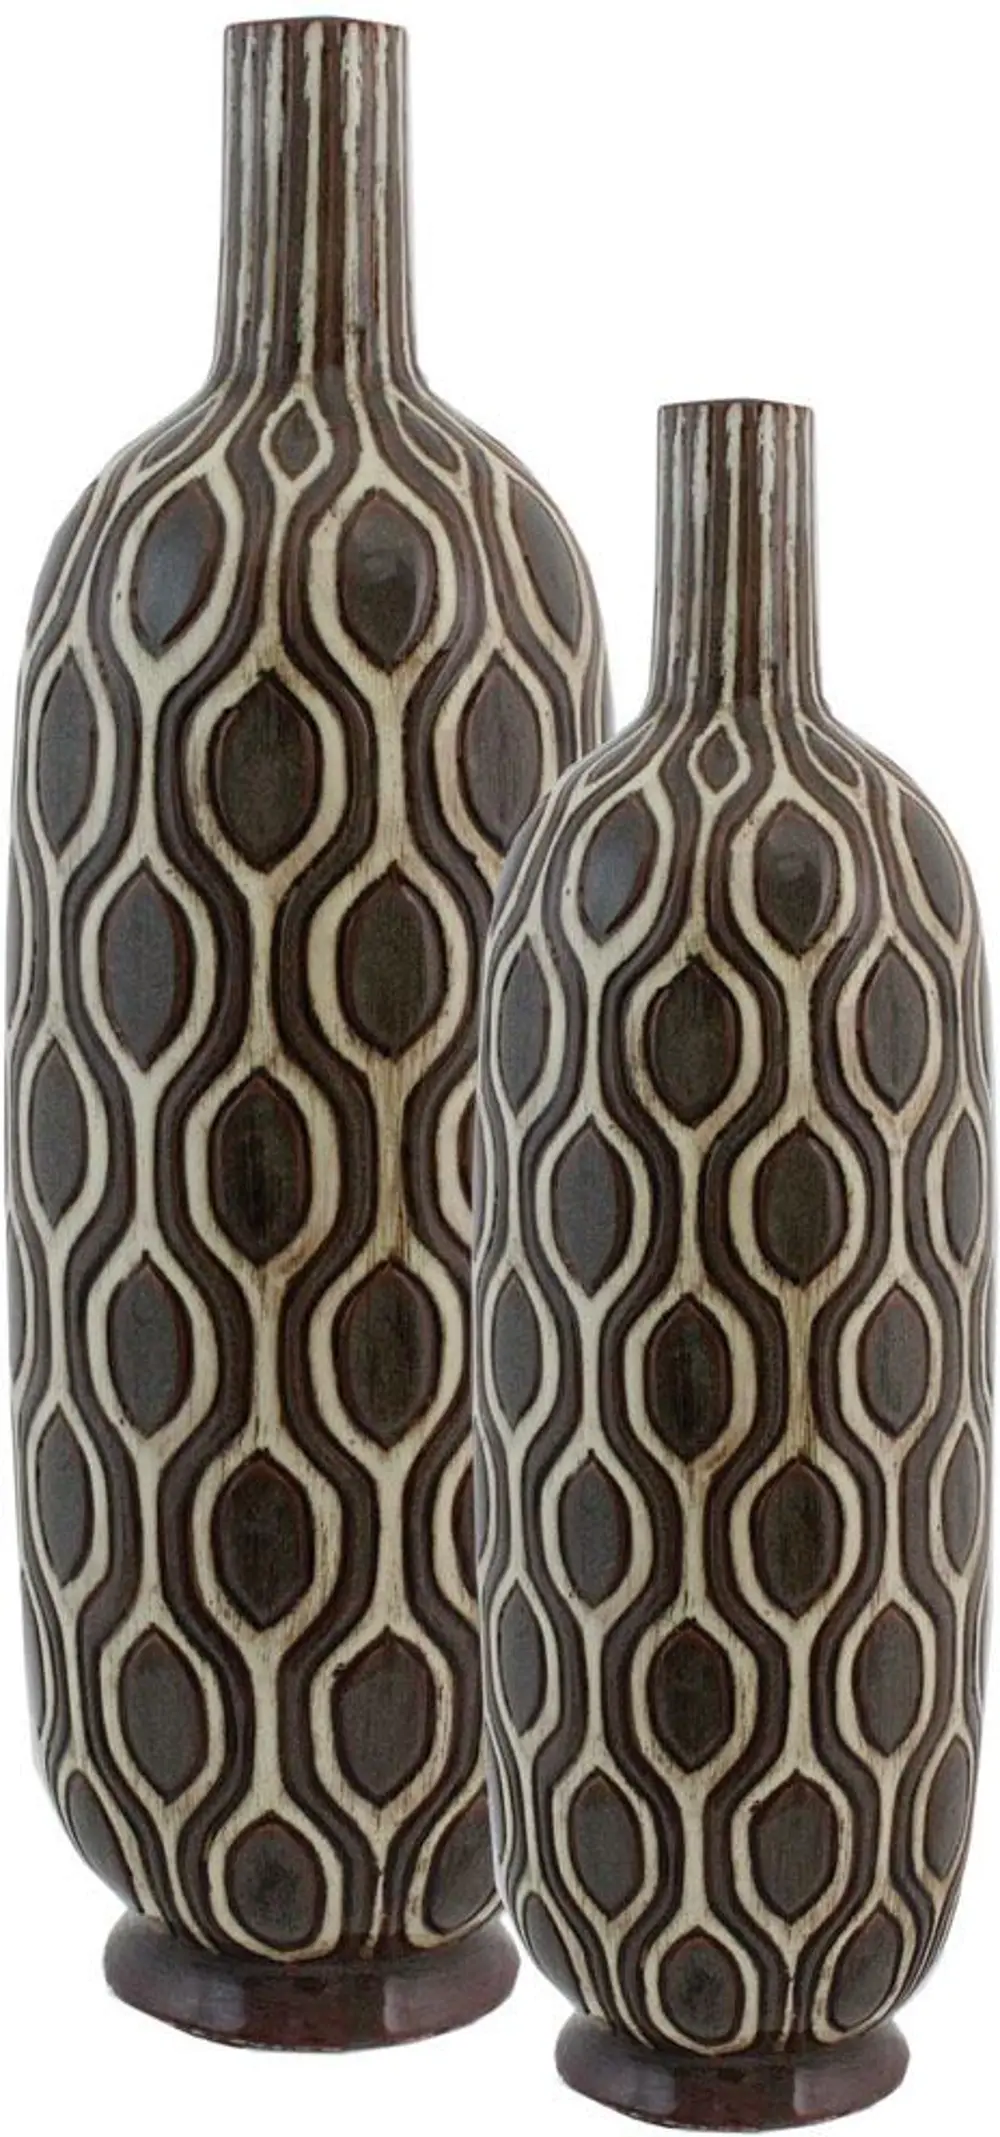 22 Inch Black and White Ceramic Vase-1